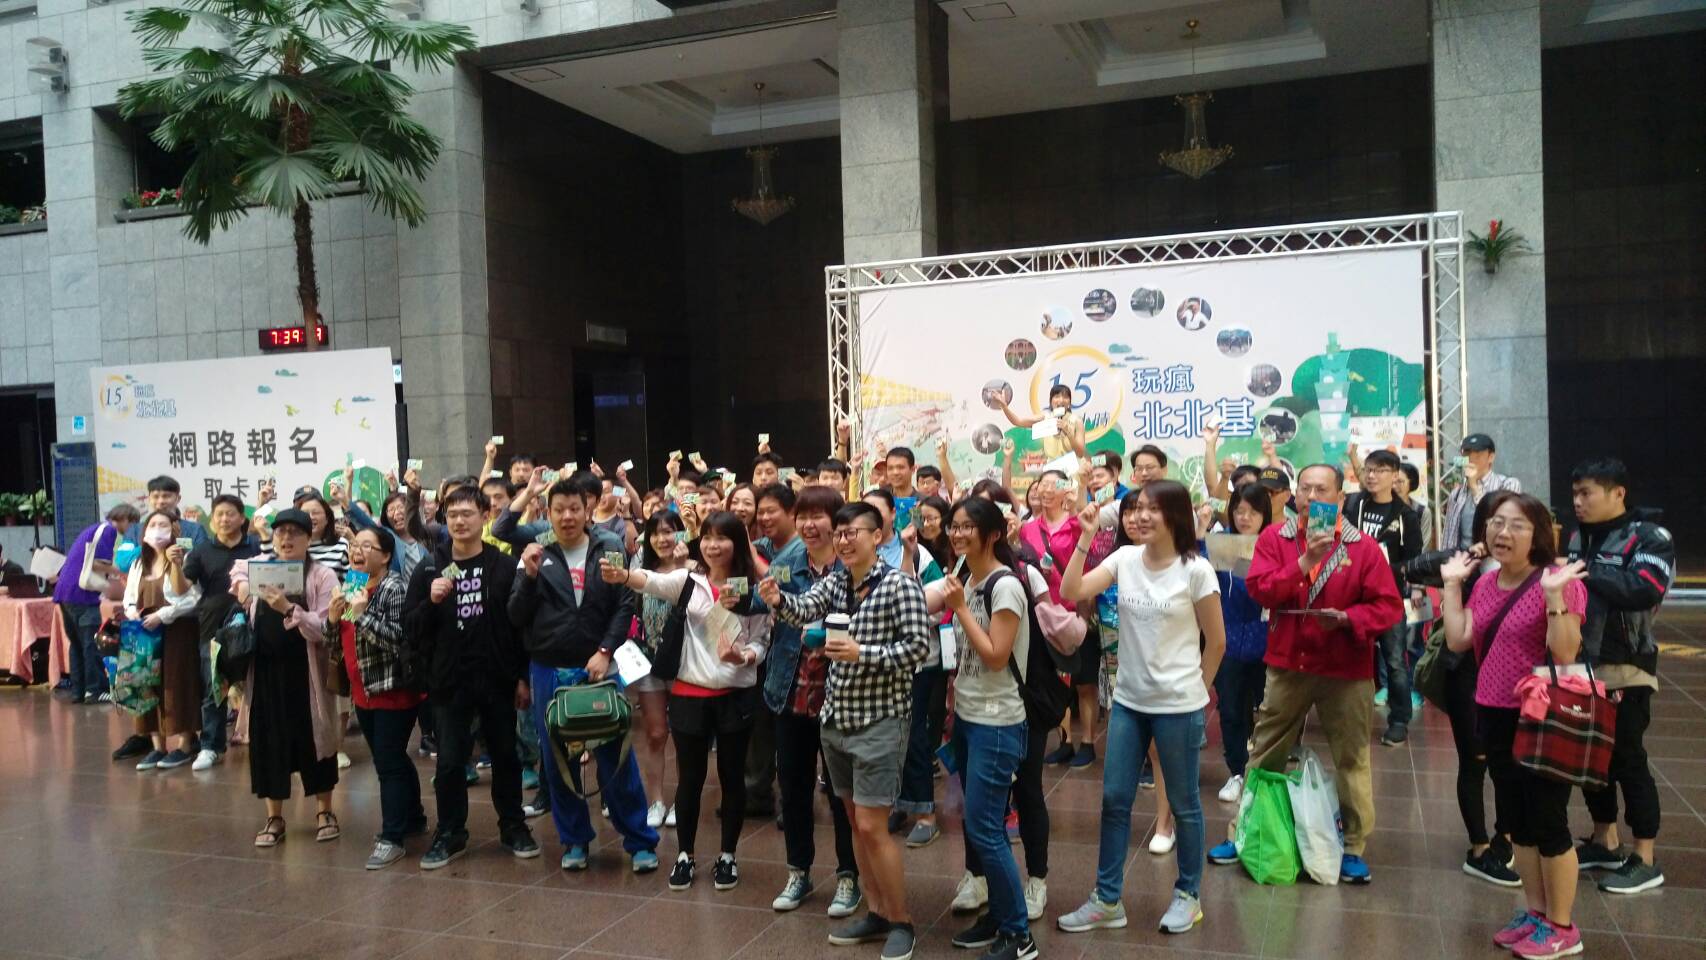 15小时玩疯北北基活动参赛者於台北市政府一楼大厅集体开跑